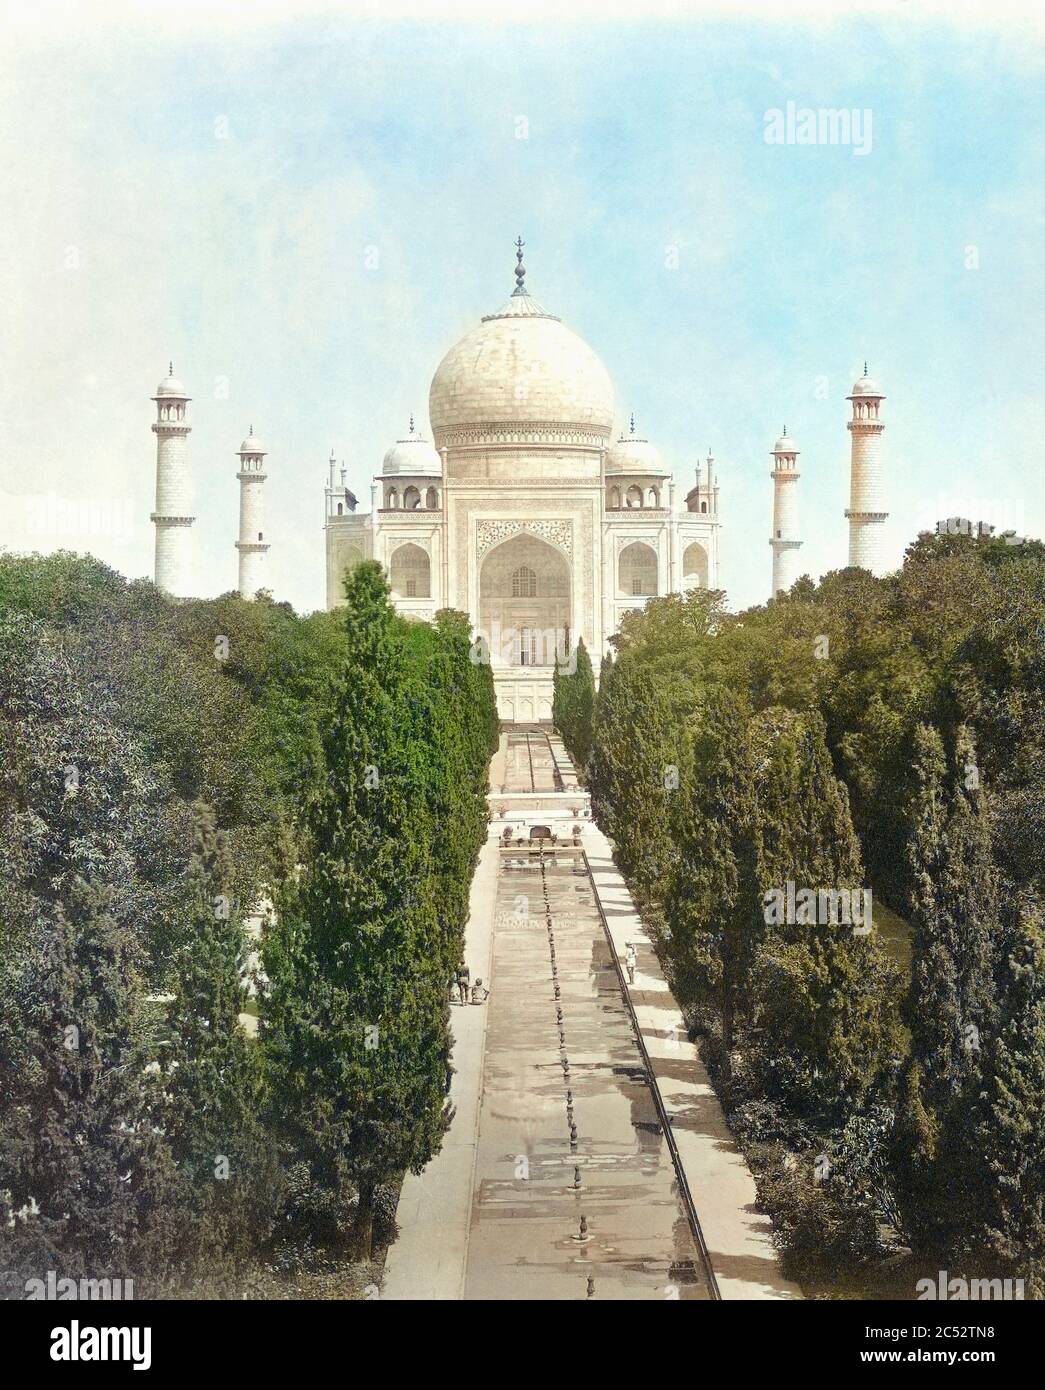 Le Taj Mahal, Agra, Uttar Pradesh, Inde au milieu du XIXe siècle. Détail d'une photographie du photographe anglais Samuel Bourne, 1834 - 1912. Colorisation ultérieure. Banque D'Images